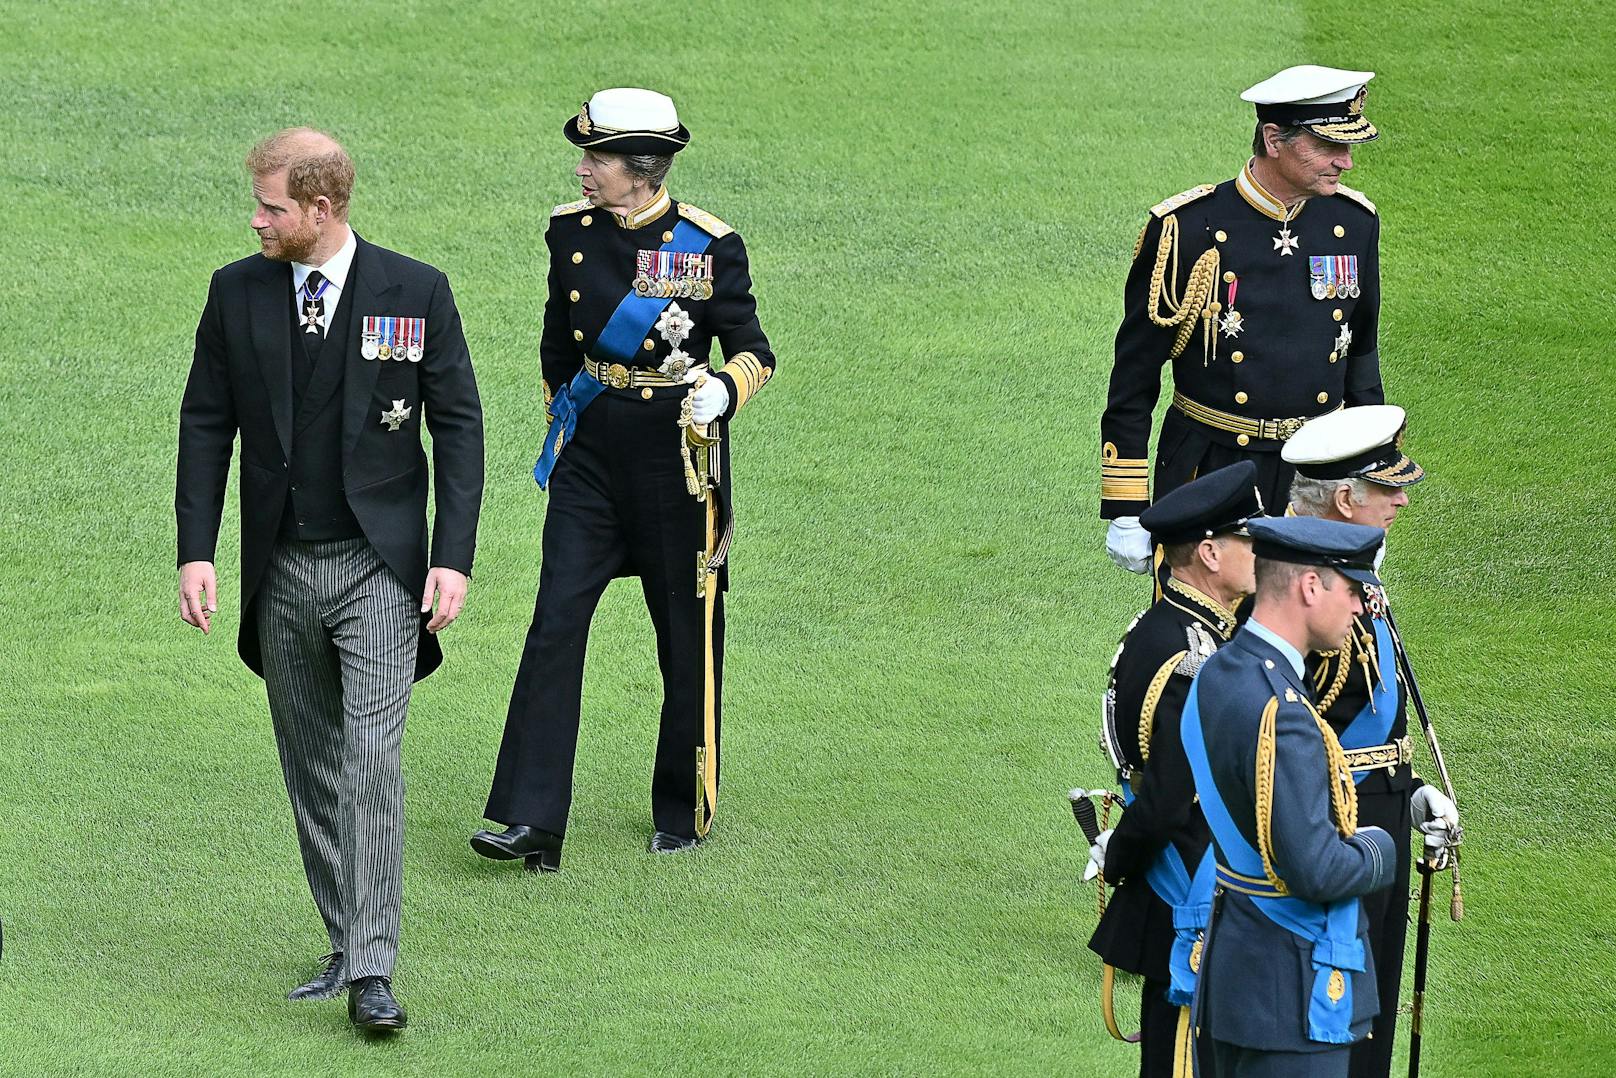 Der britische Prinz Harry, Herzog von Sussex, die britische Prinzessin Anne, Prinzessin Royal, Vizeadmiral Timothy Laurence, der britische König Karl III., der britische Prinz Edward, der Earl of Wessex und der britische Prinz William, Prinz von Wales.